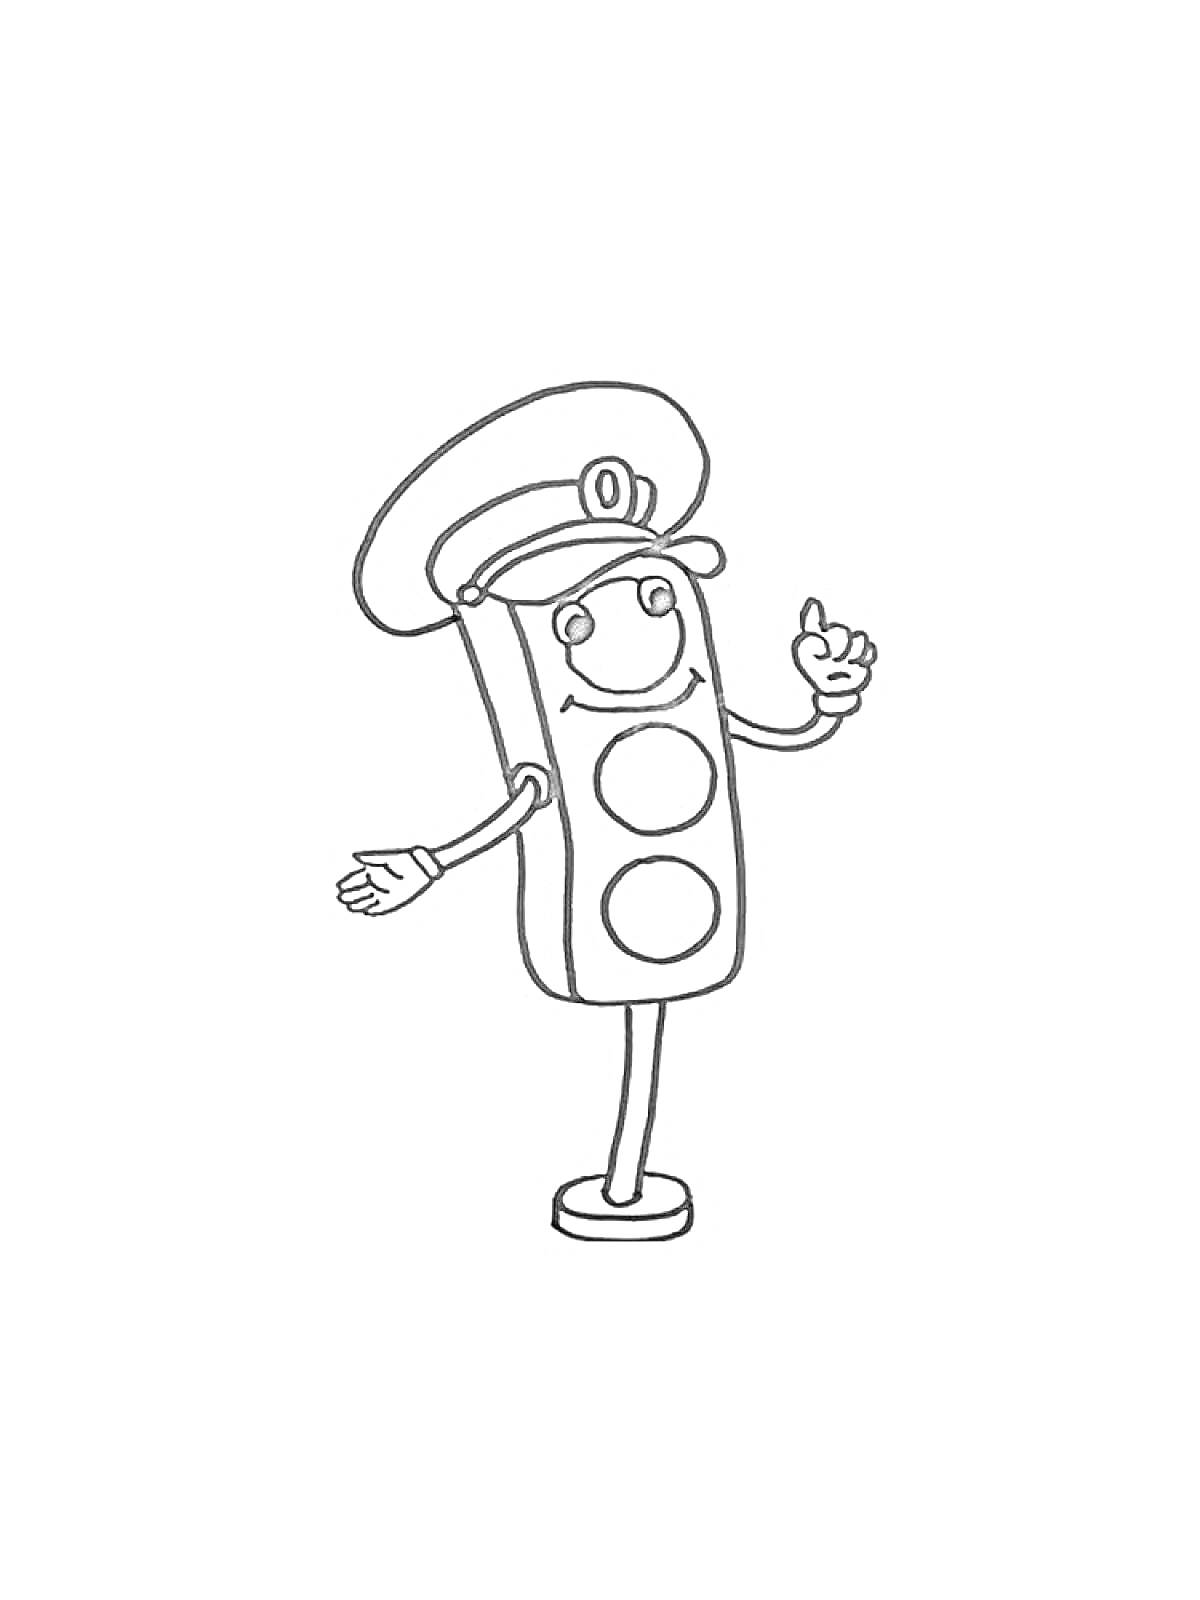 Светофор в форме сотрудника дорожной полиции с лицом, руками и ногами